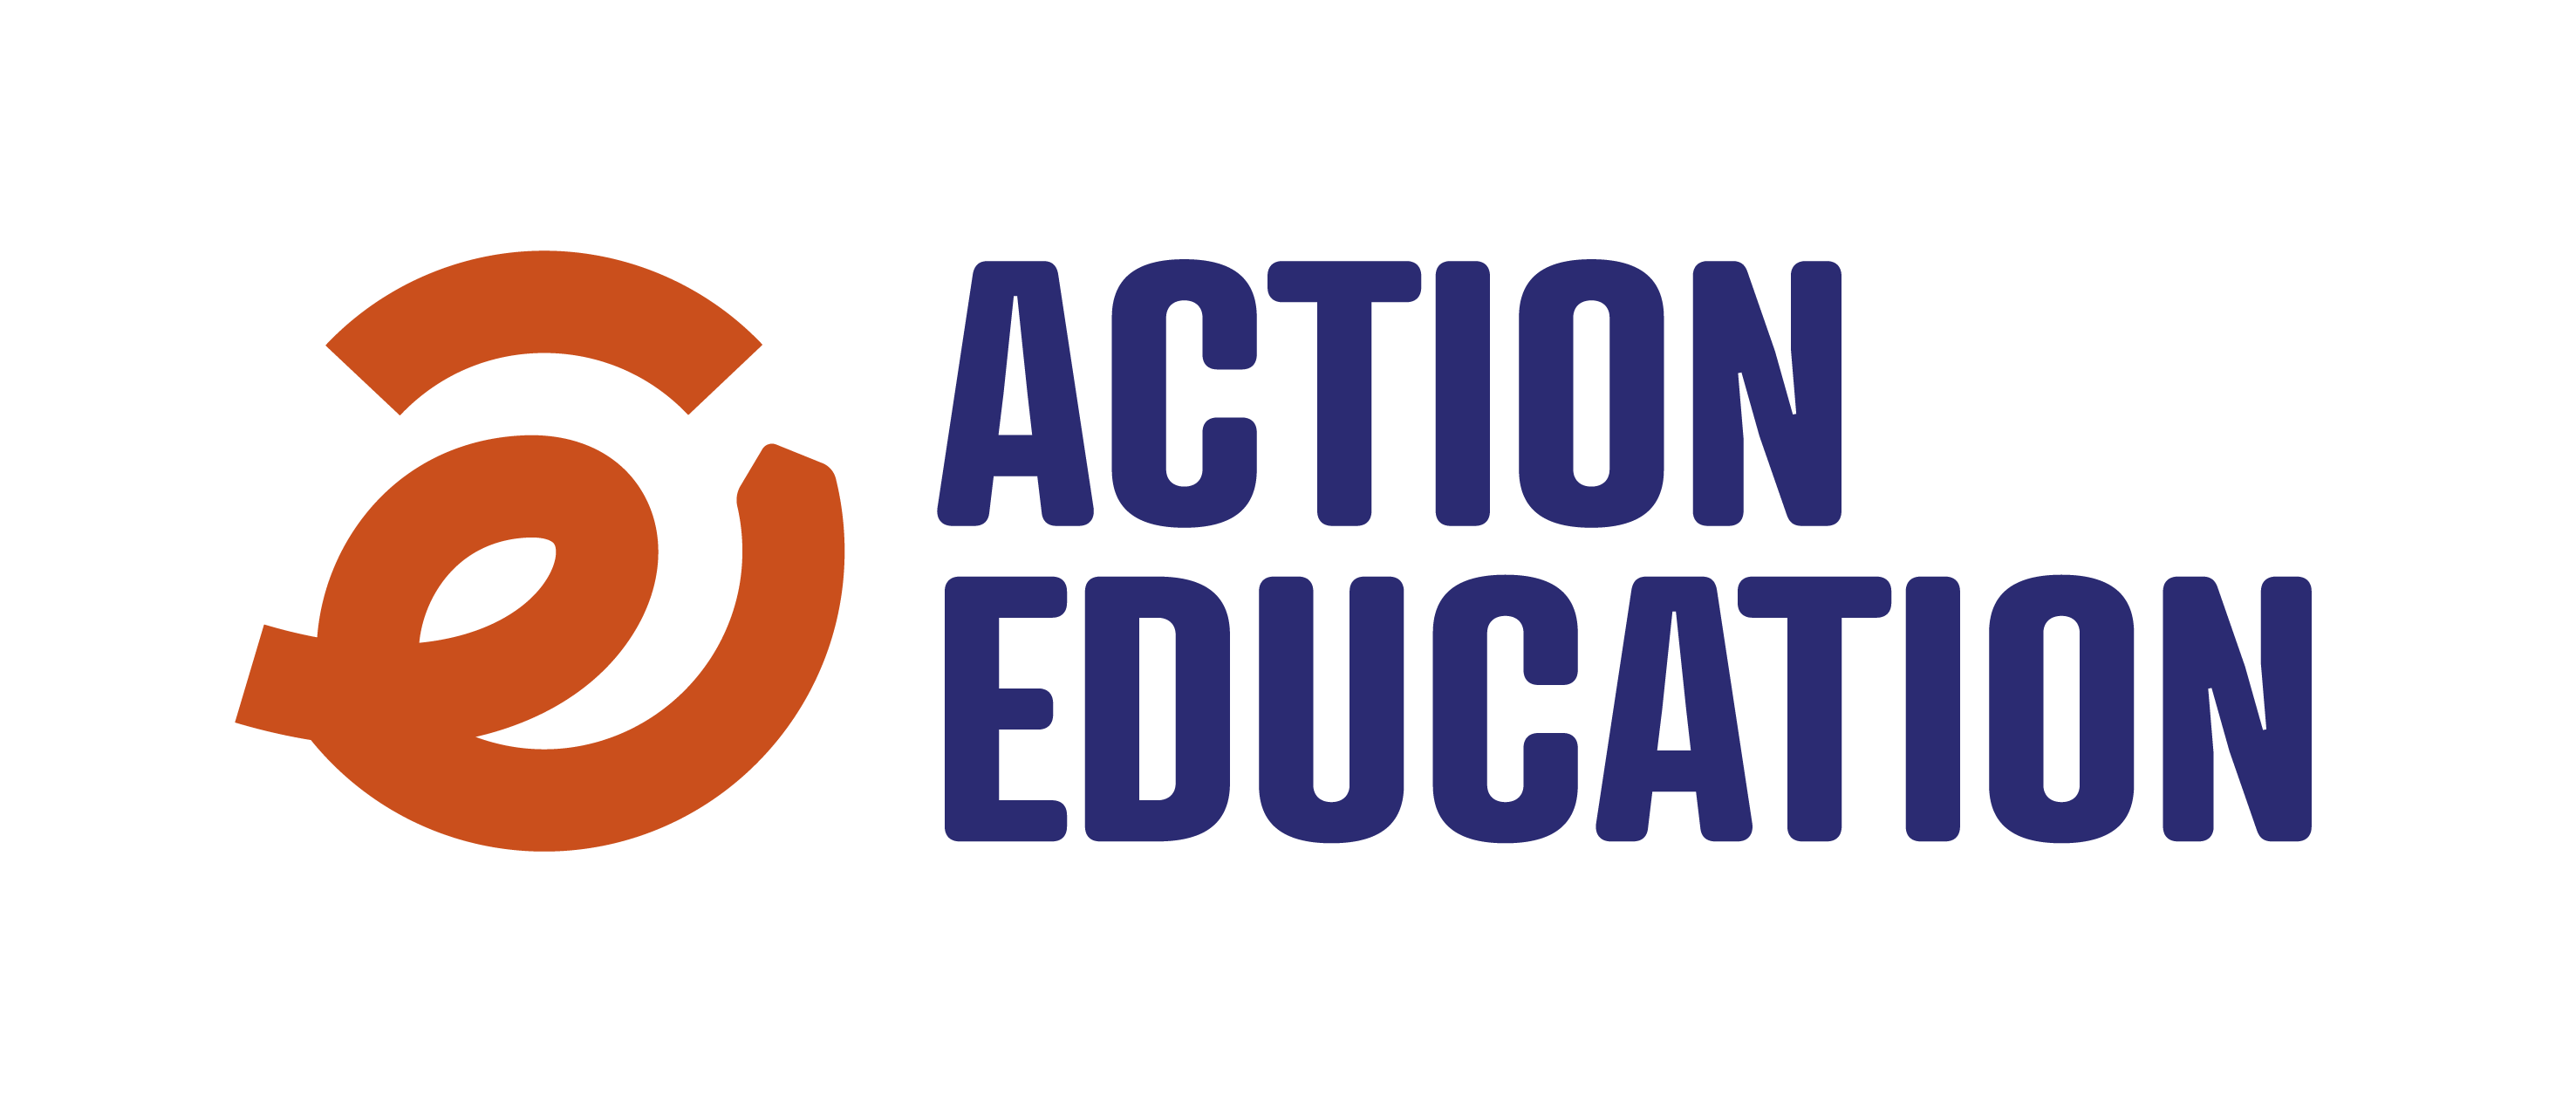 Aide et Action